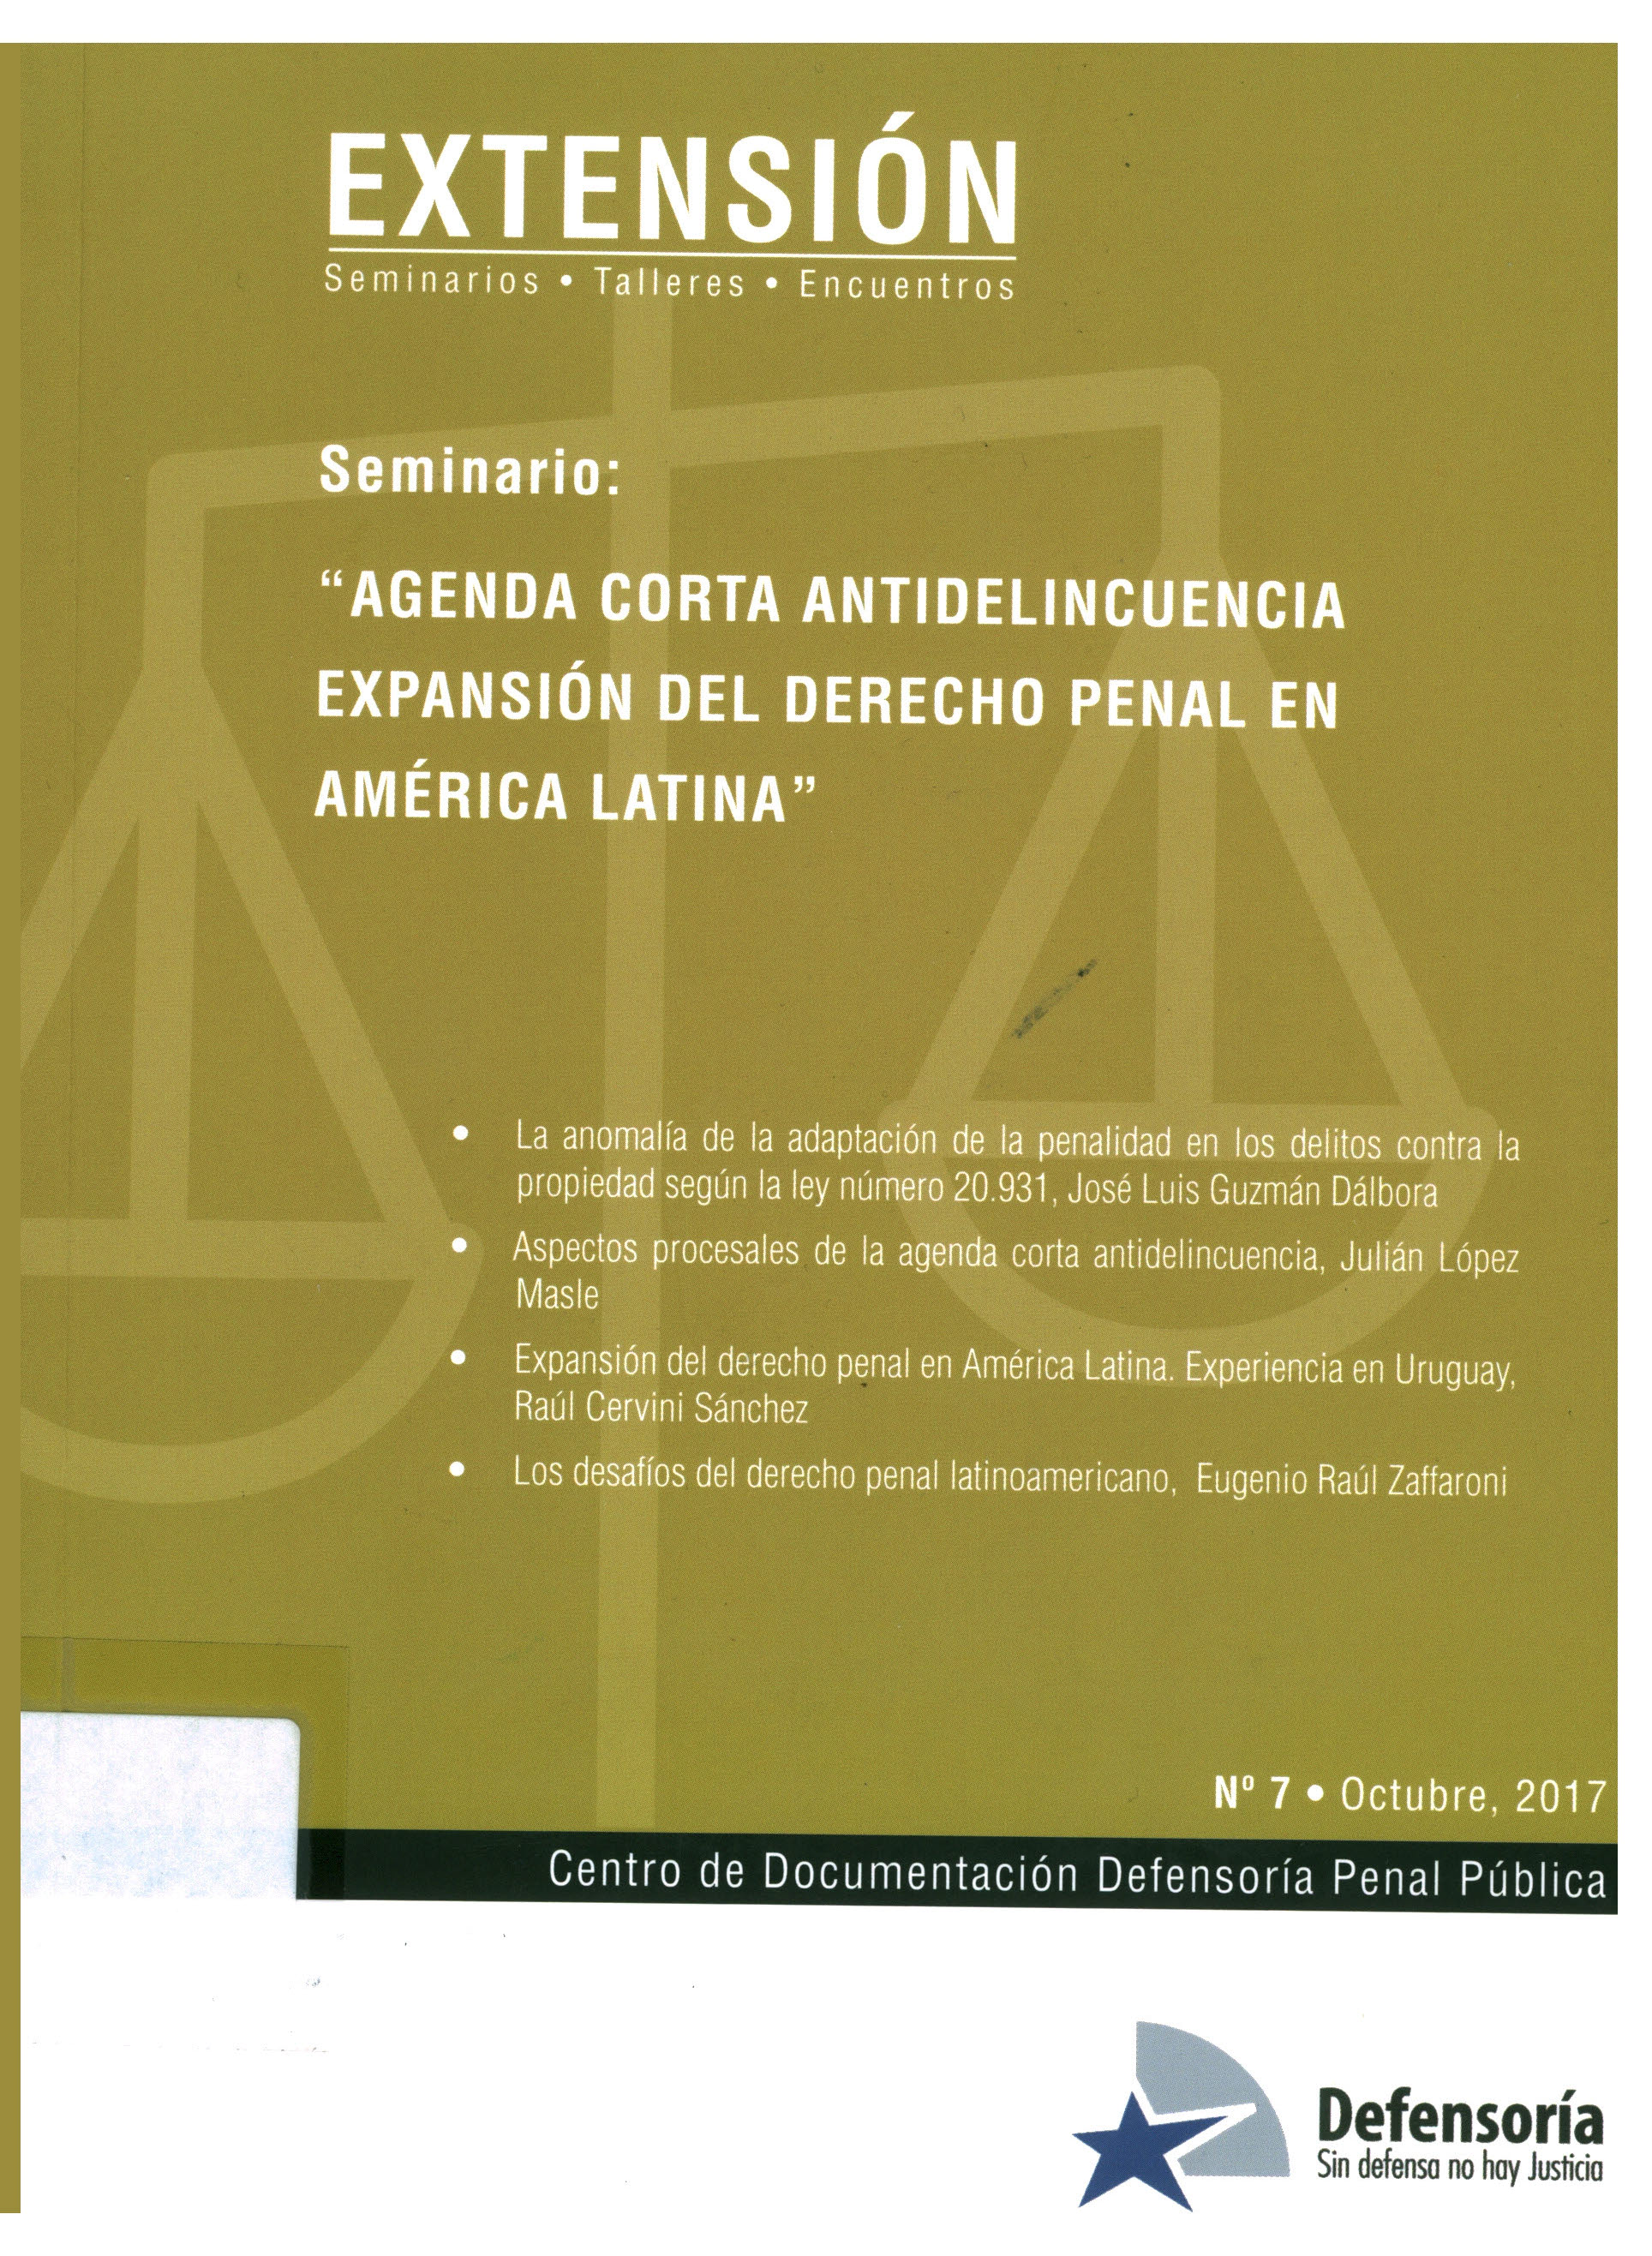 Seminario: "Agenda corta antidelincuencia expansión del derecho penal en América Latina"